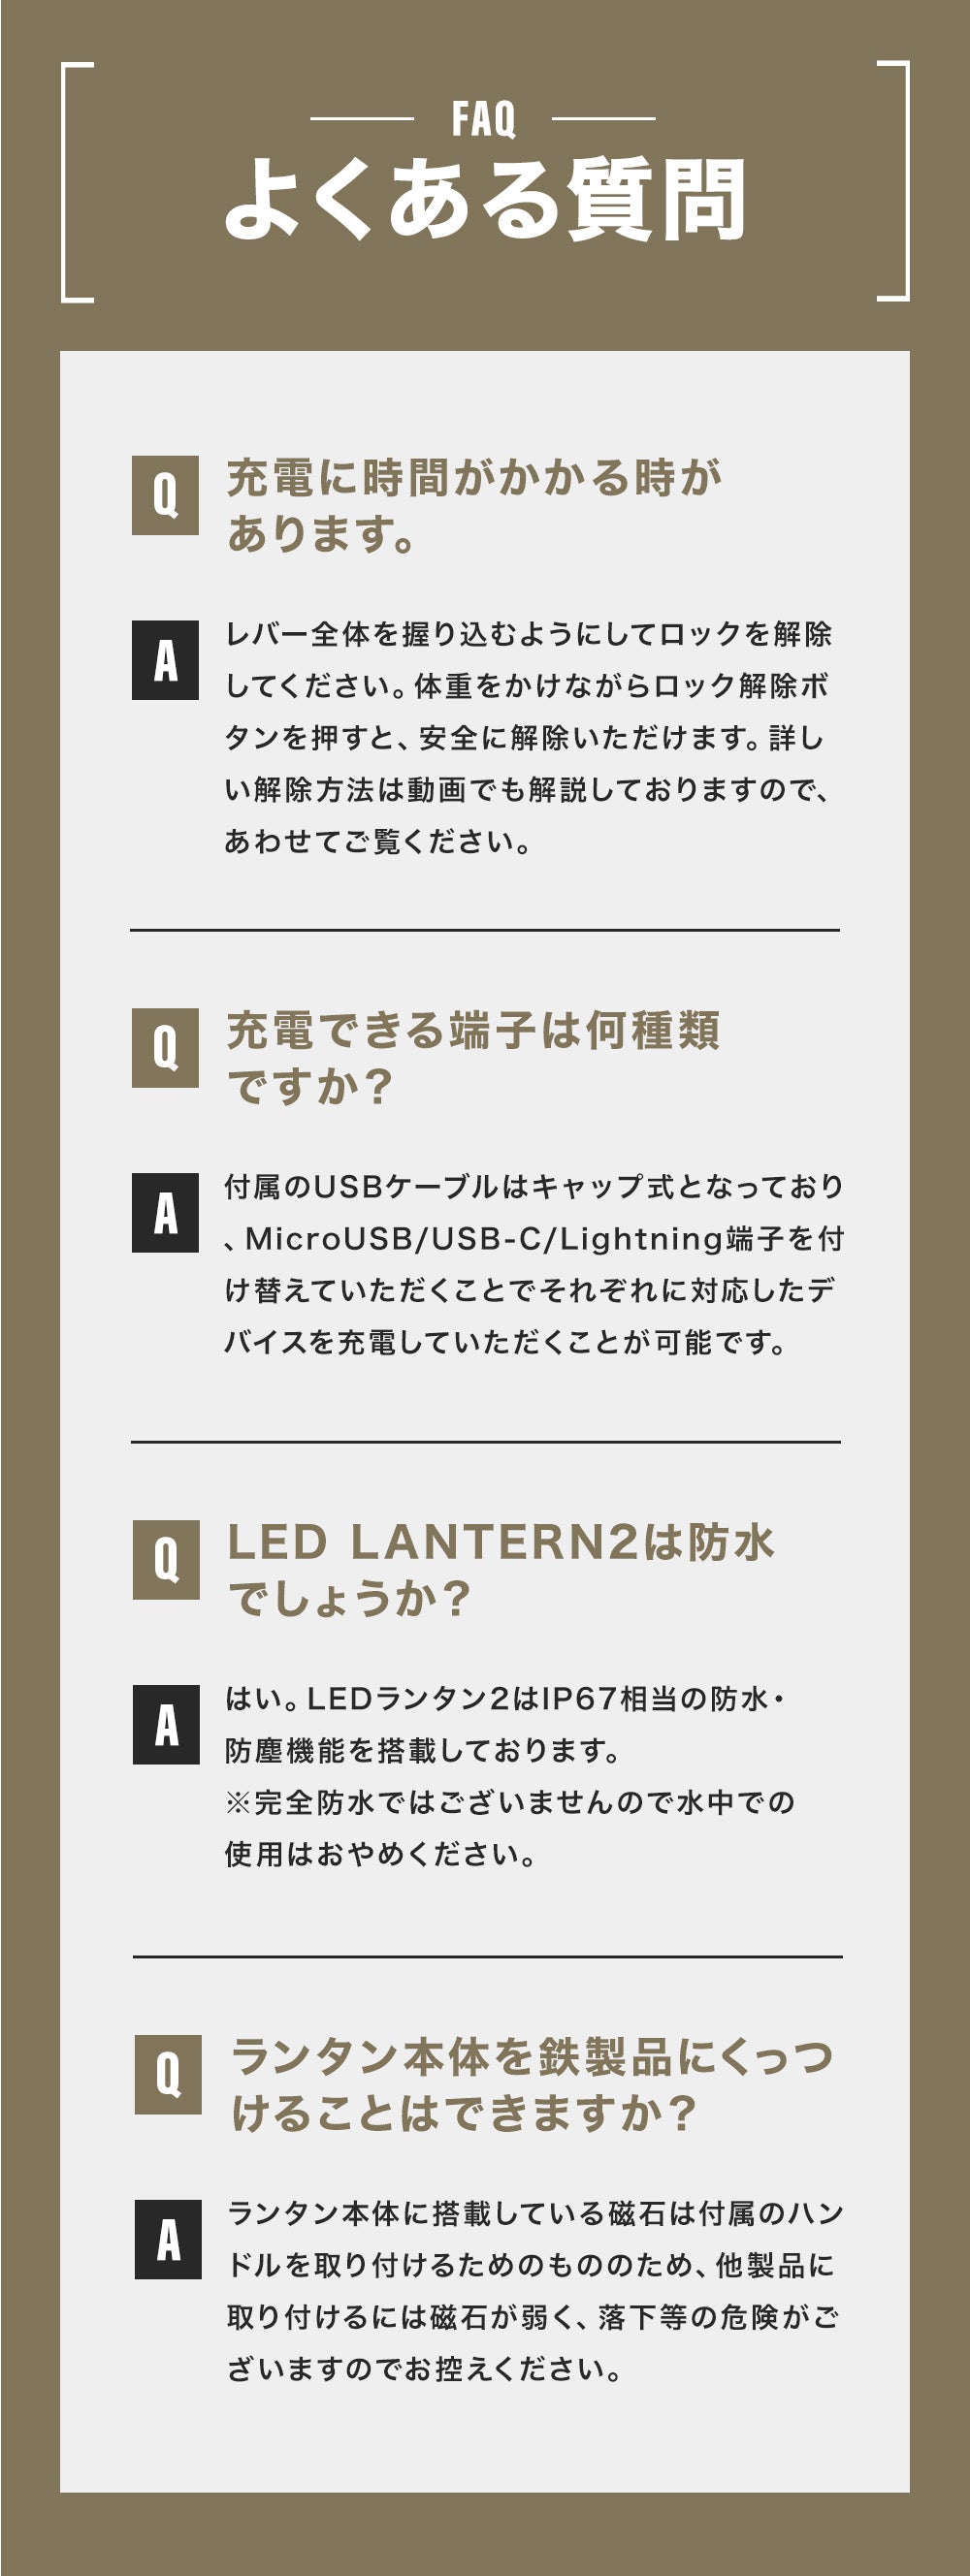 WAQ LED LANTERN2 【明るさ1650lm・13400mAh】【1年保証】